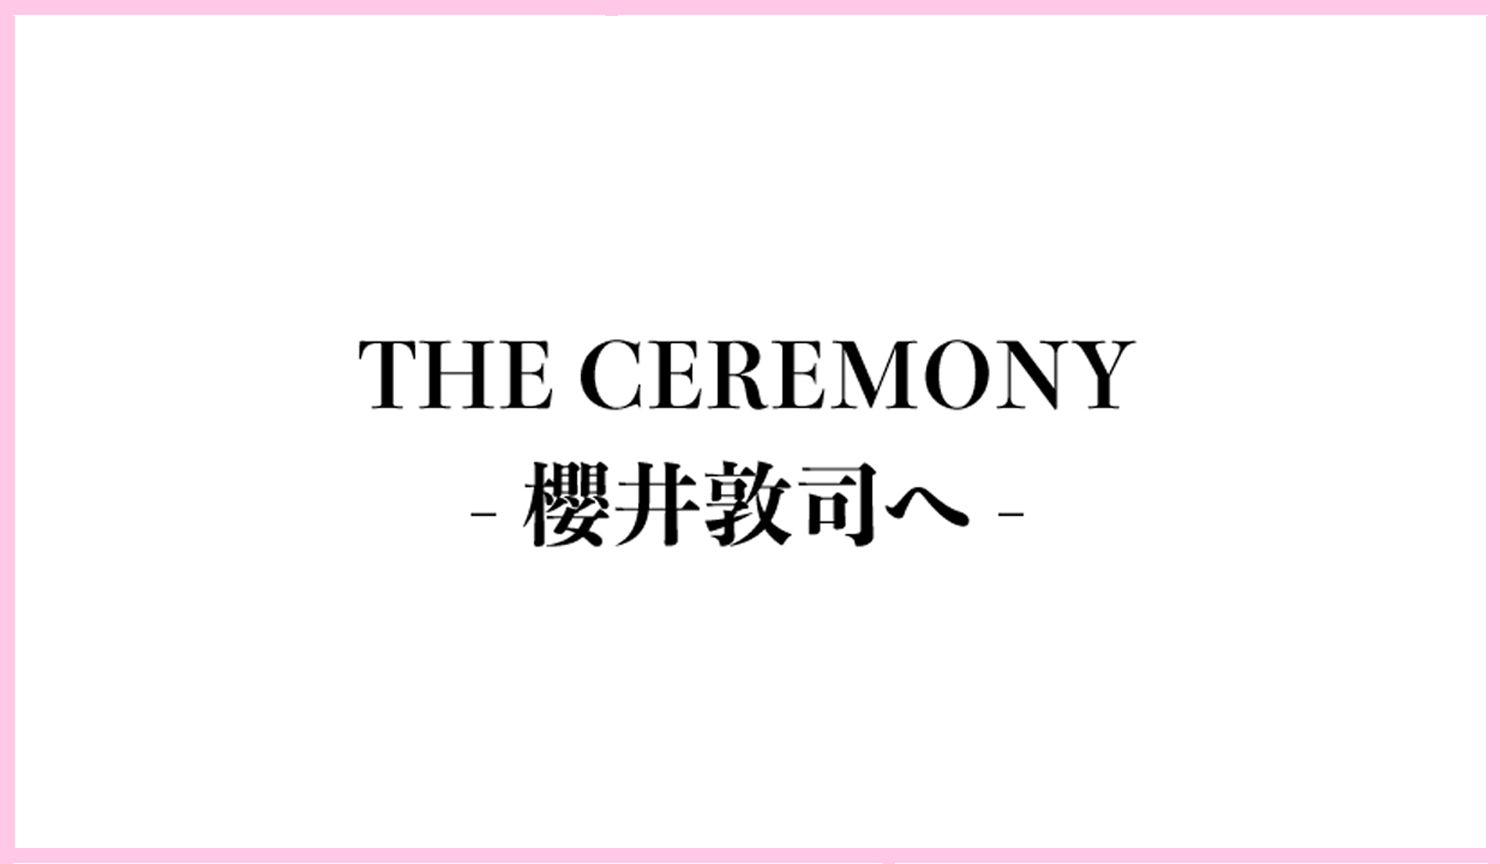 THE CEREMONY-櫻井敦司へ-